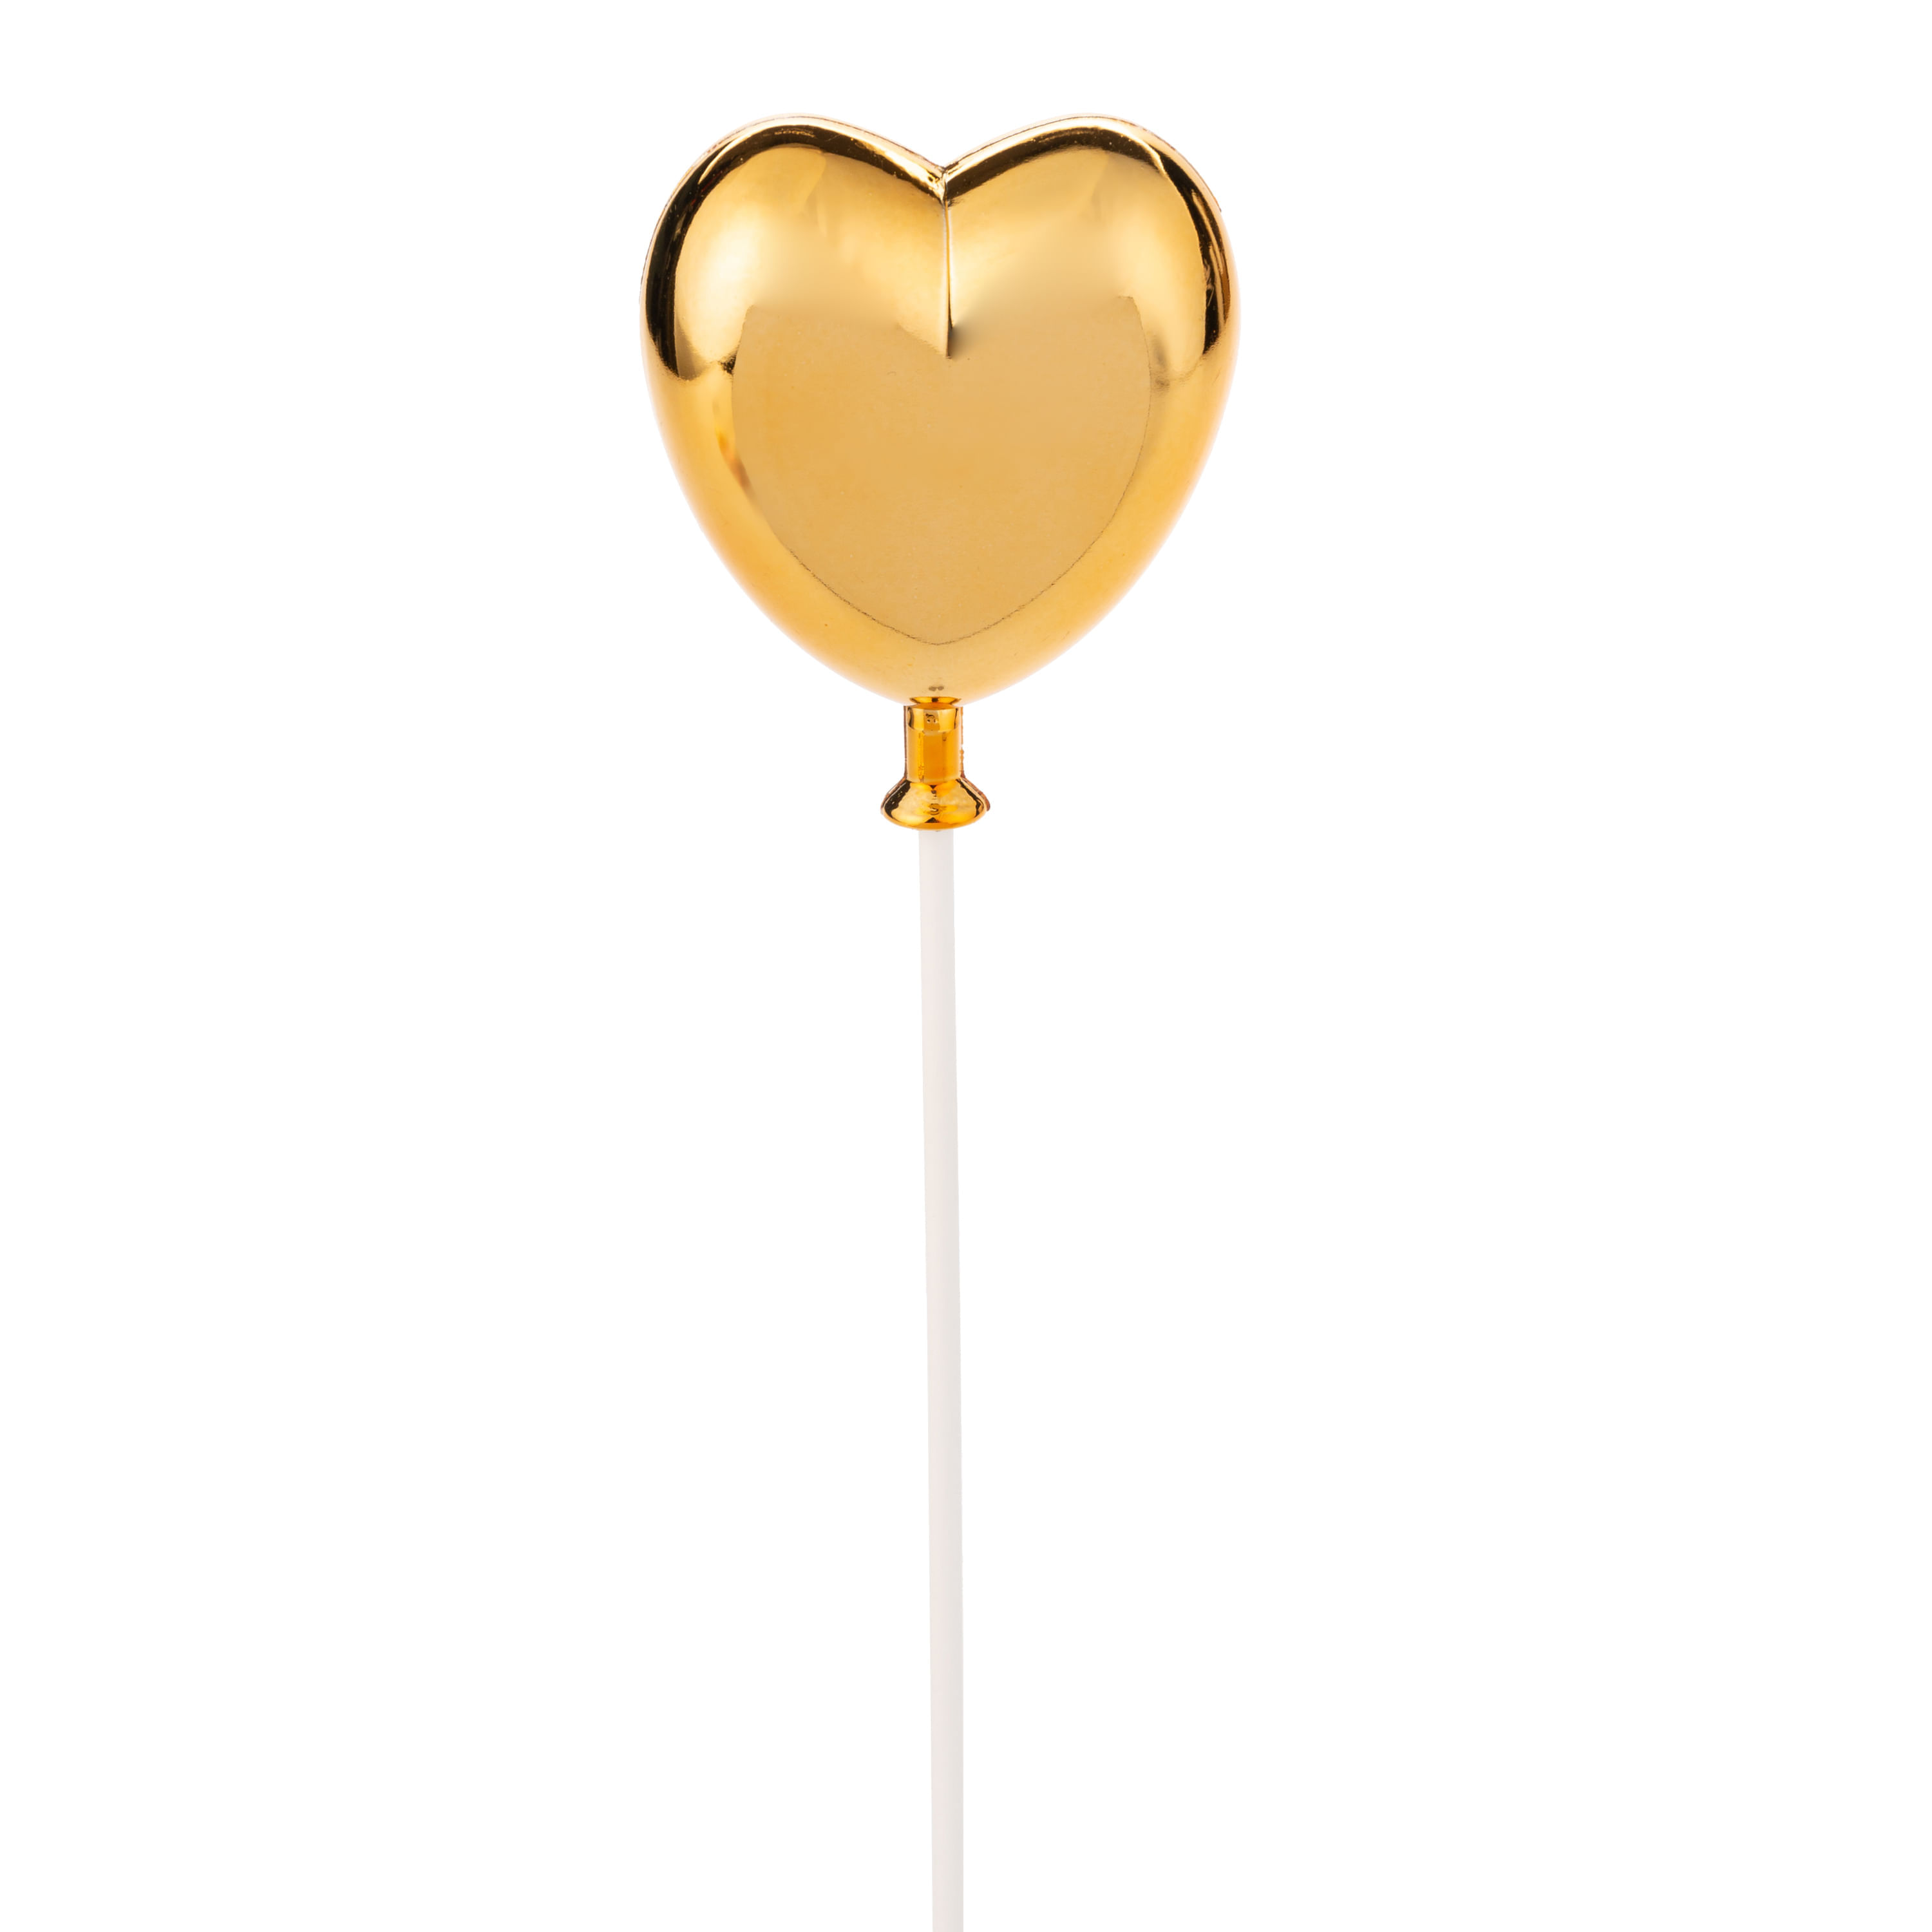 Topo de Bolo 50 Anos Glitter Rose Gold Sonho Fino Rizzo Confeitaria - Loja  de Confeitaria